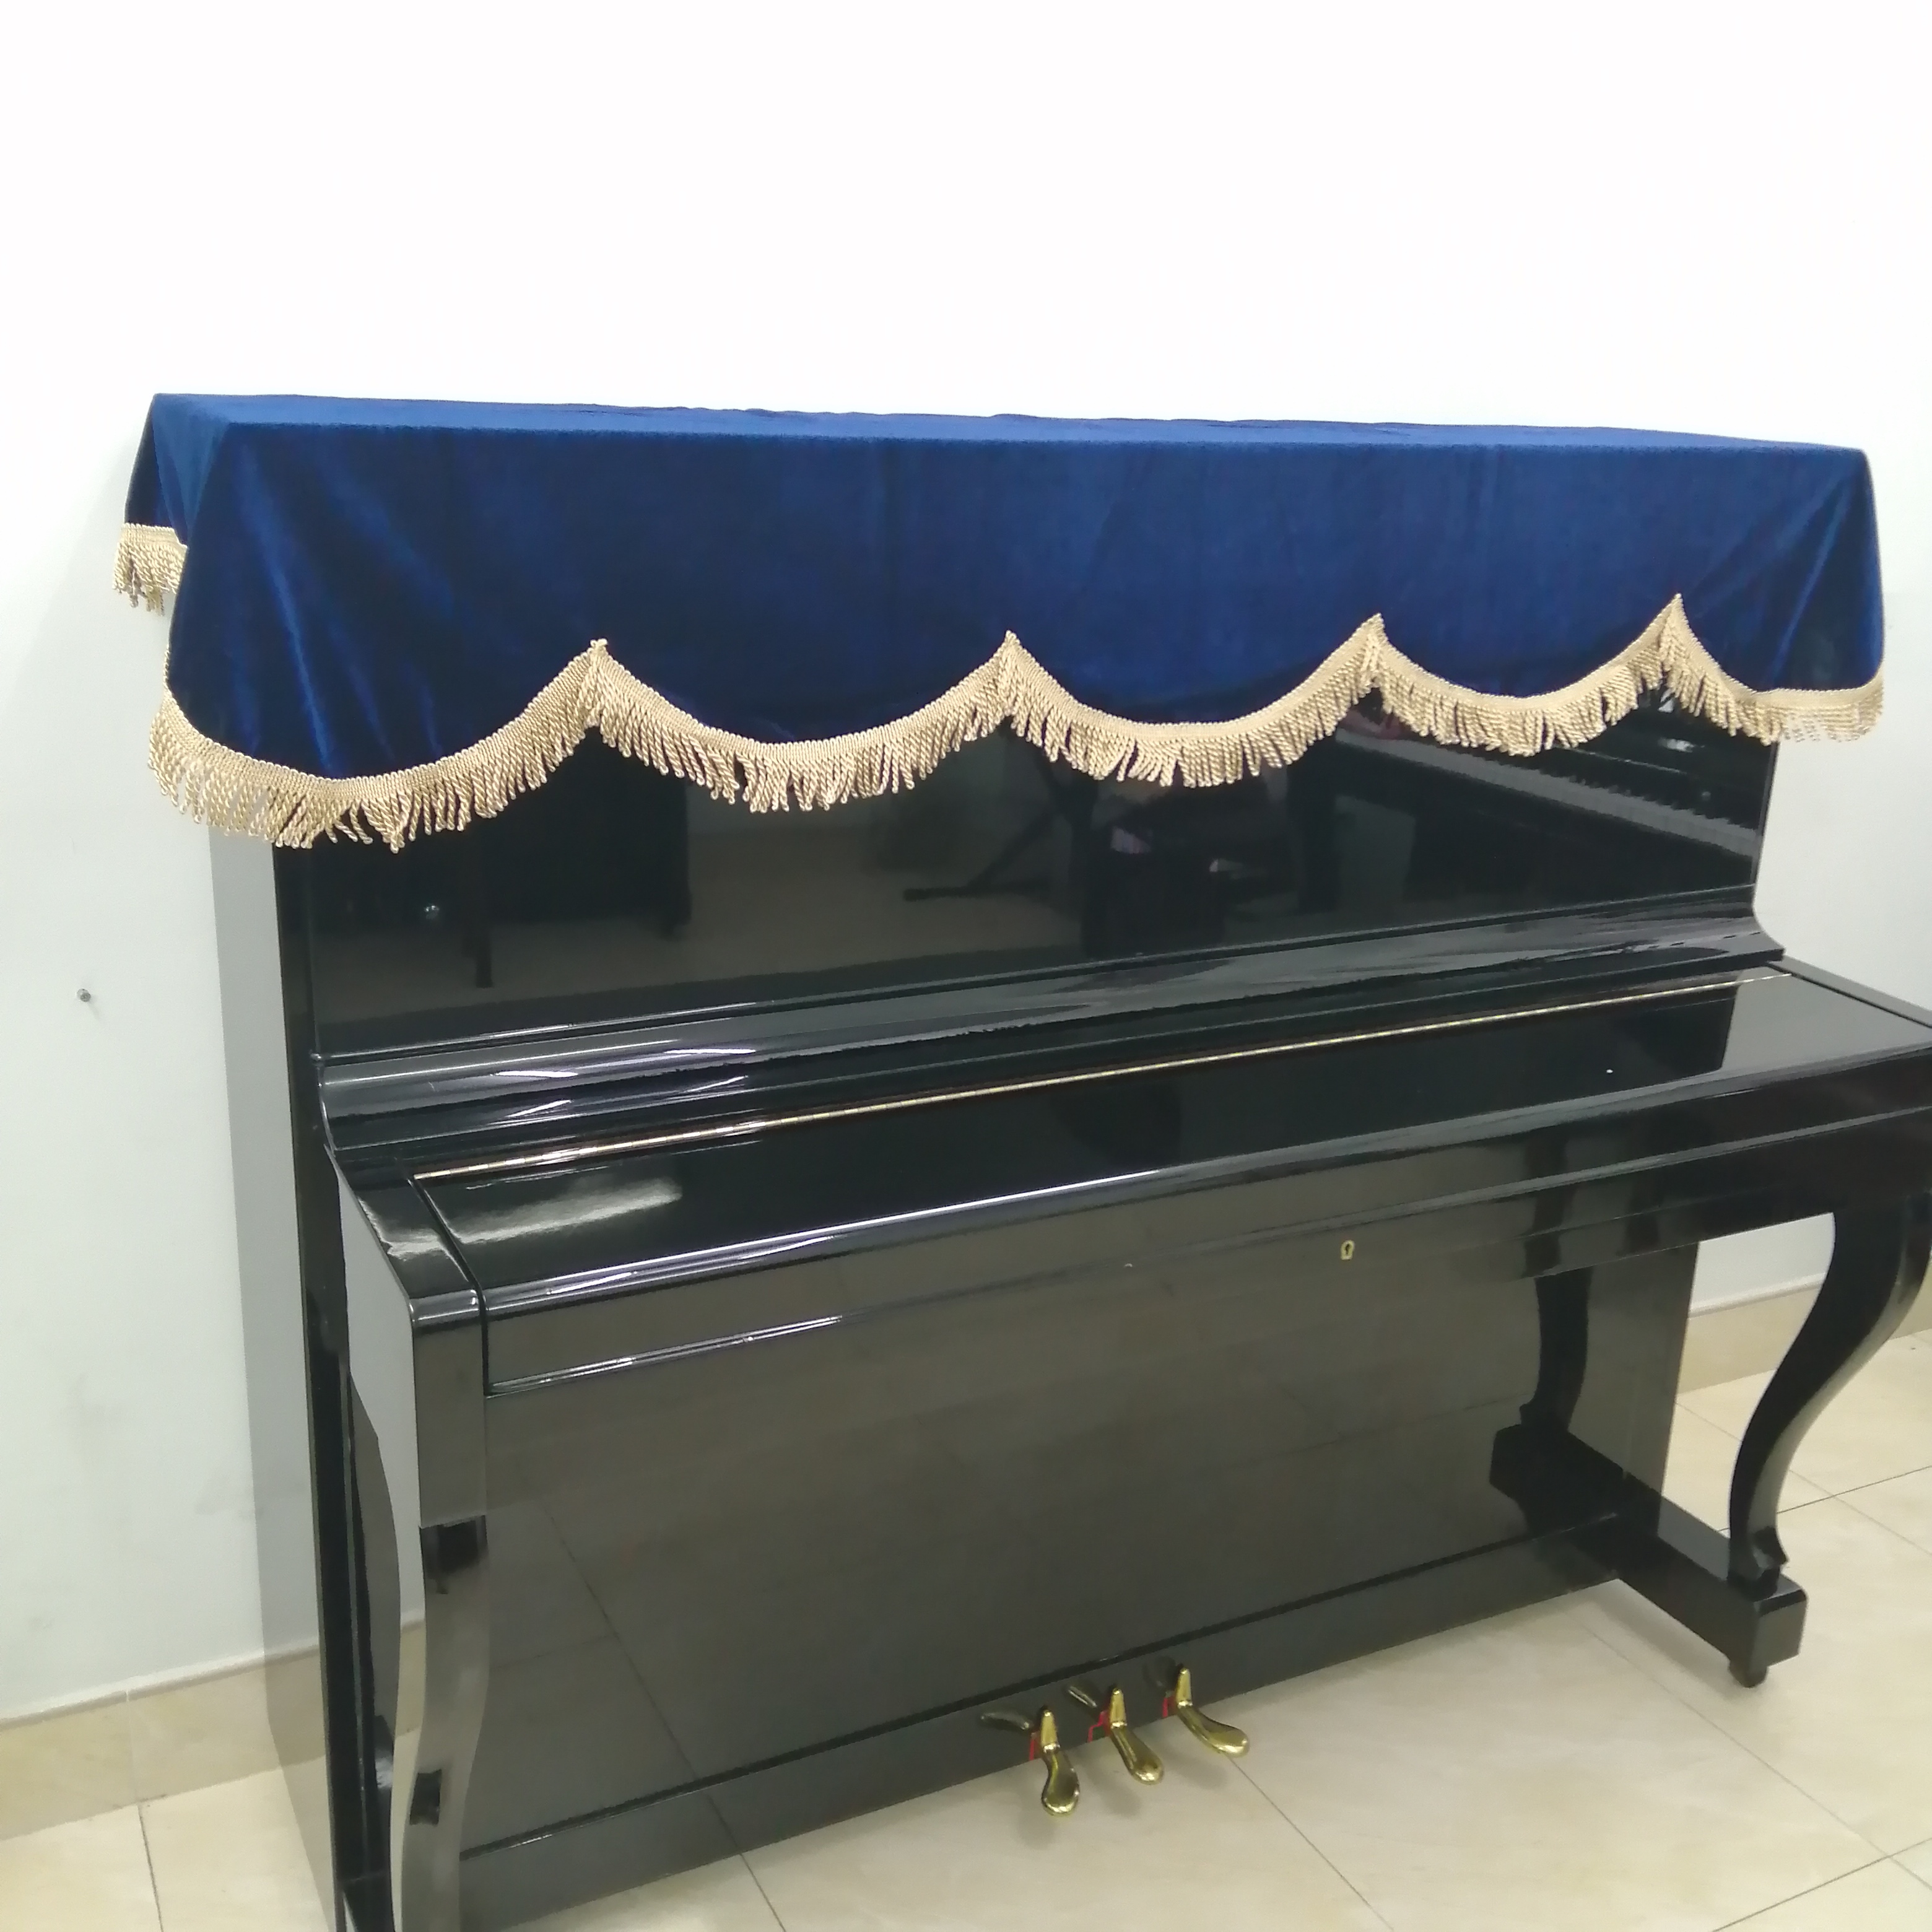 kHĂN TRẢI  PHỦ ĐÀN PIANO CƠ NHUNG DÀY MỀM MỊN MÀU XANH DƯƠNG